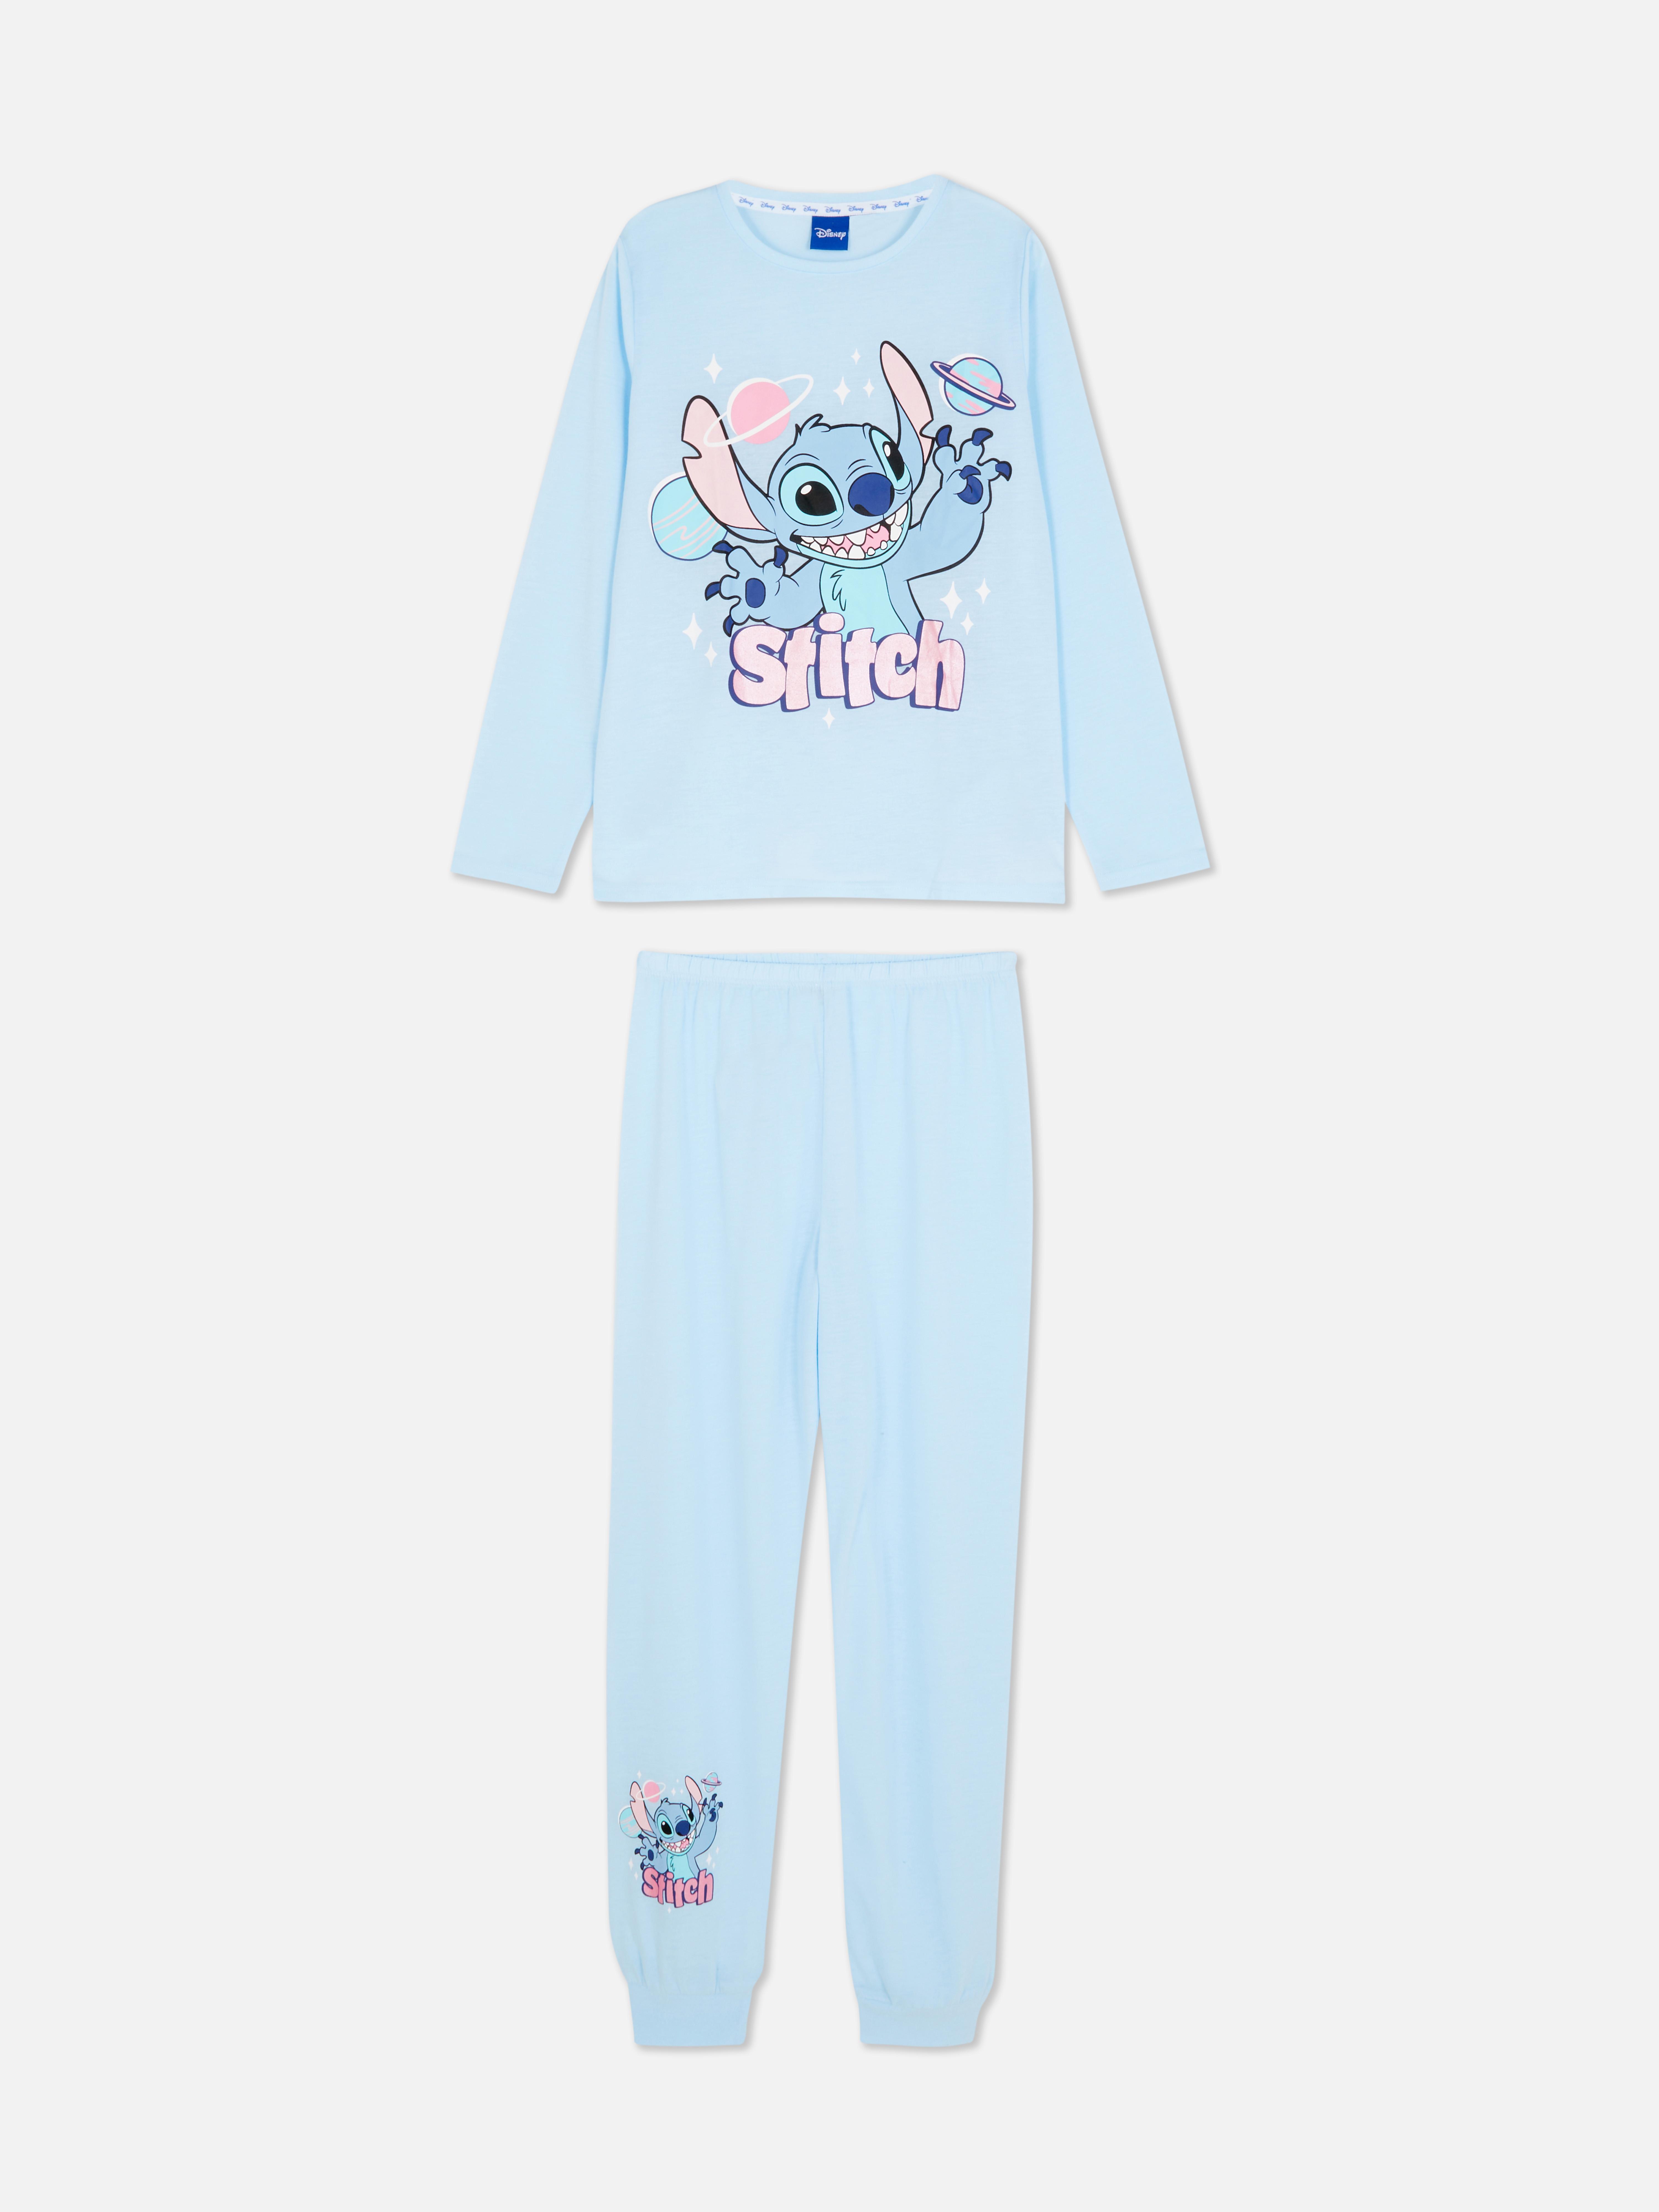 Disney’s Lilo and Stitch Graphic Pajamas